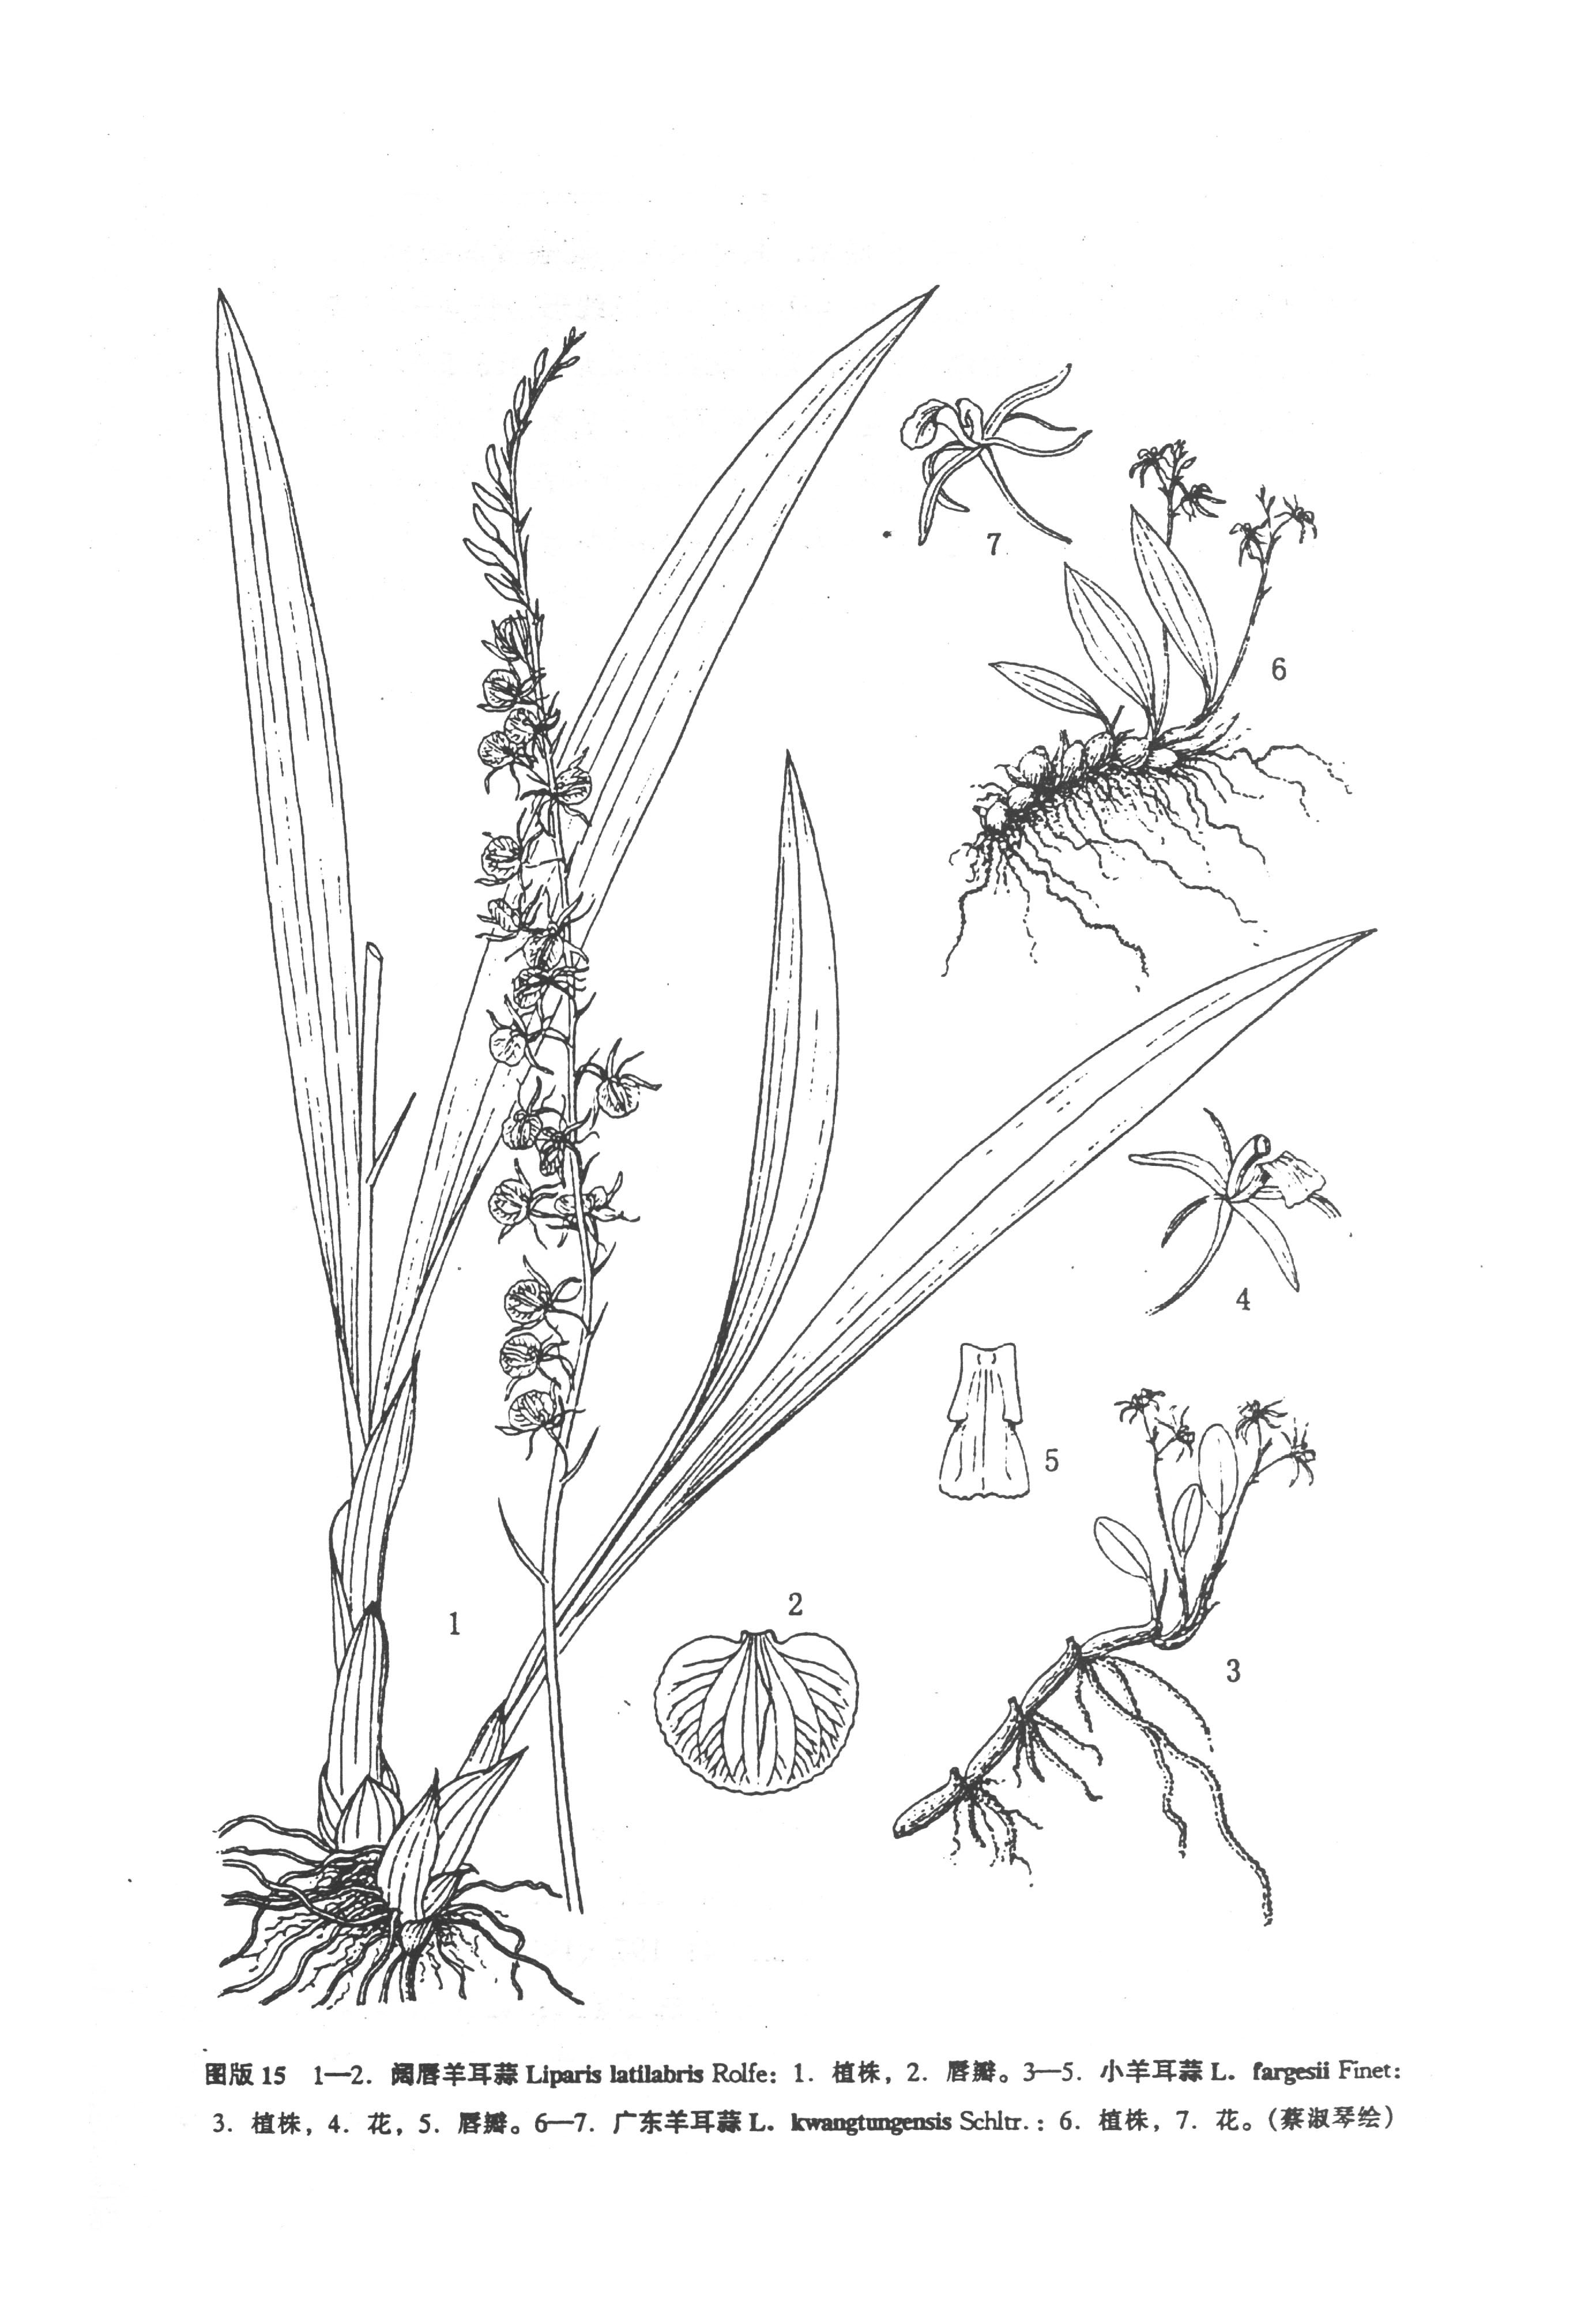 石米(雙子葉植物綱植物)